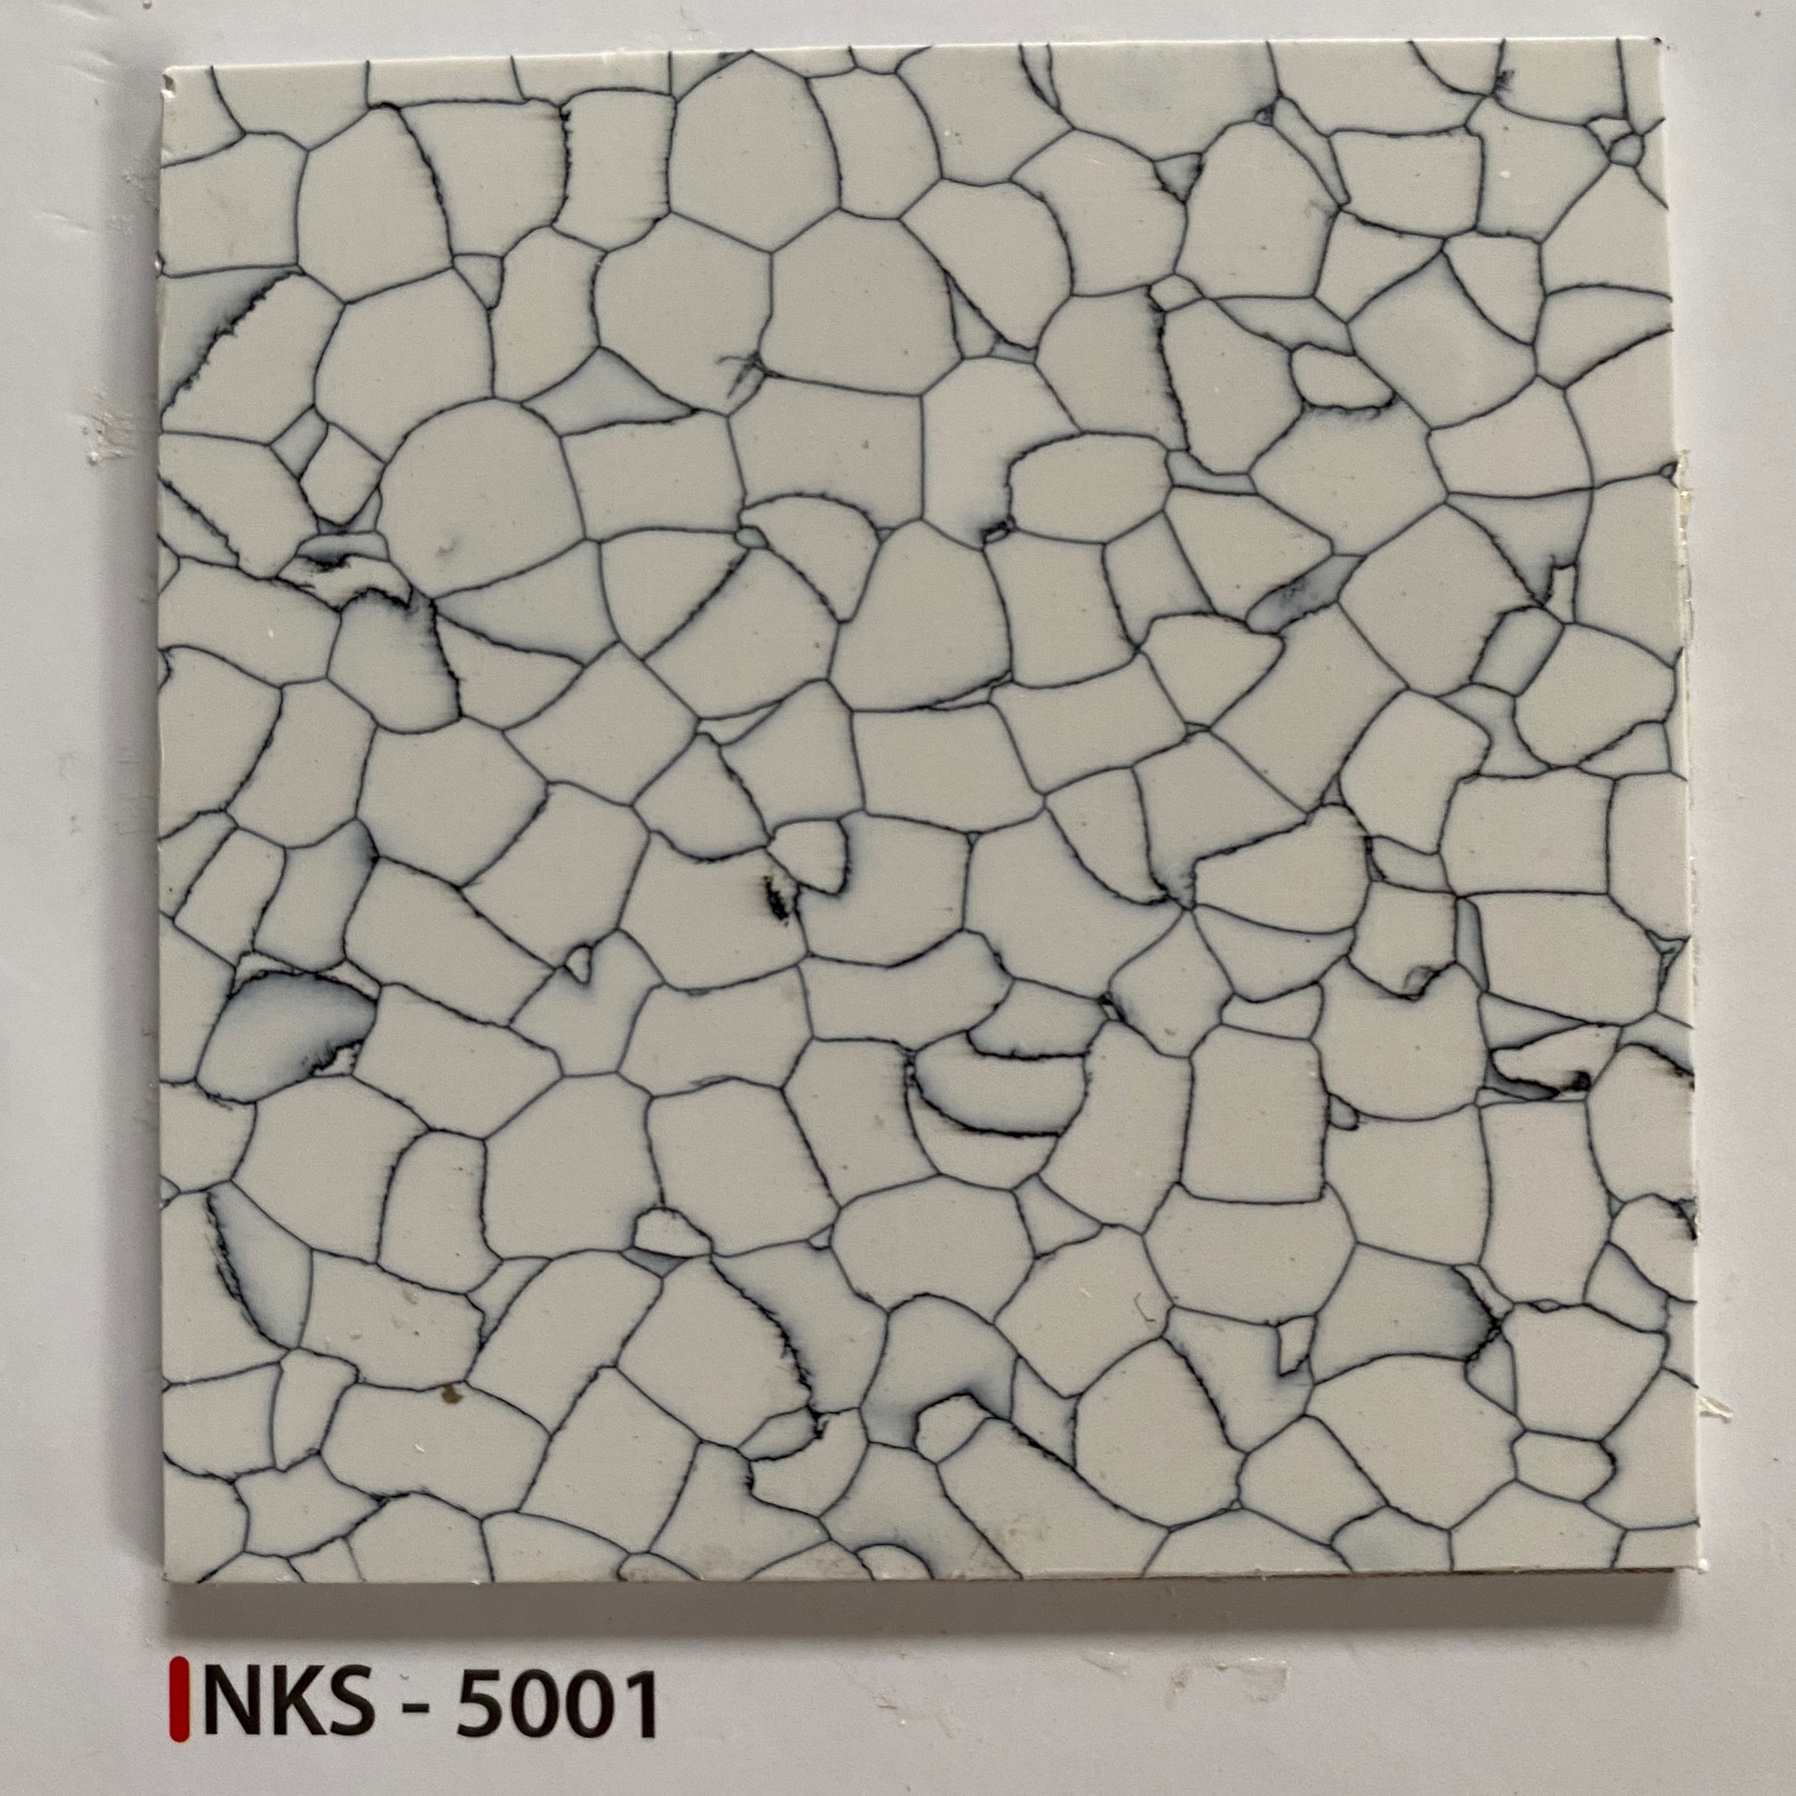 NKS - 5004